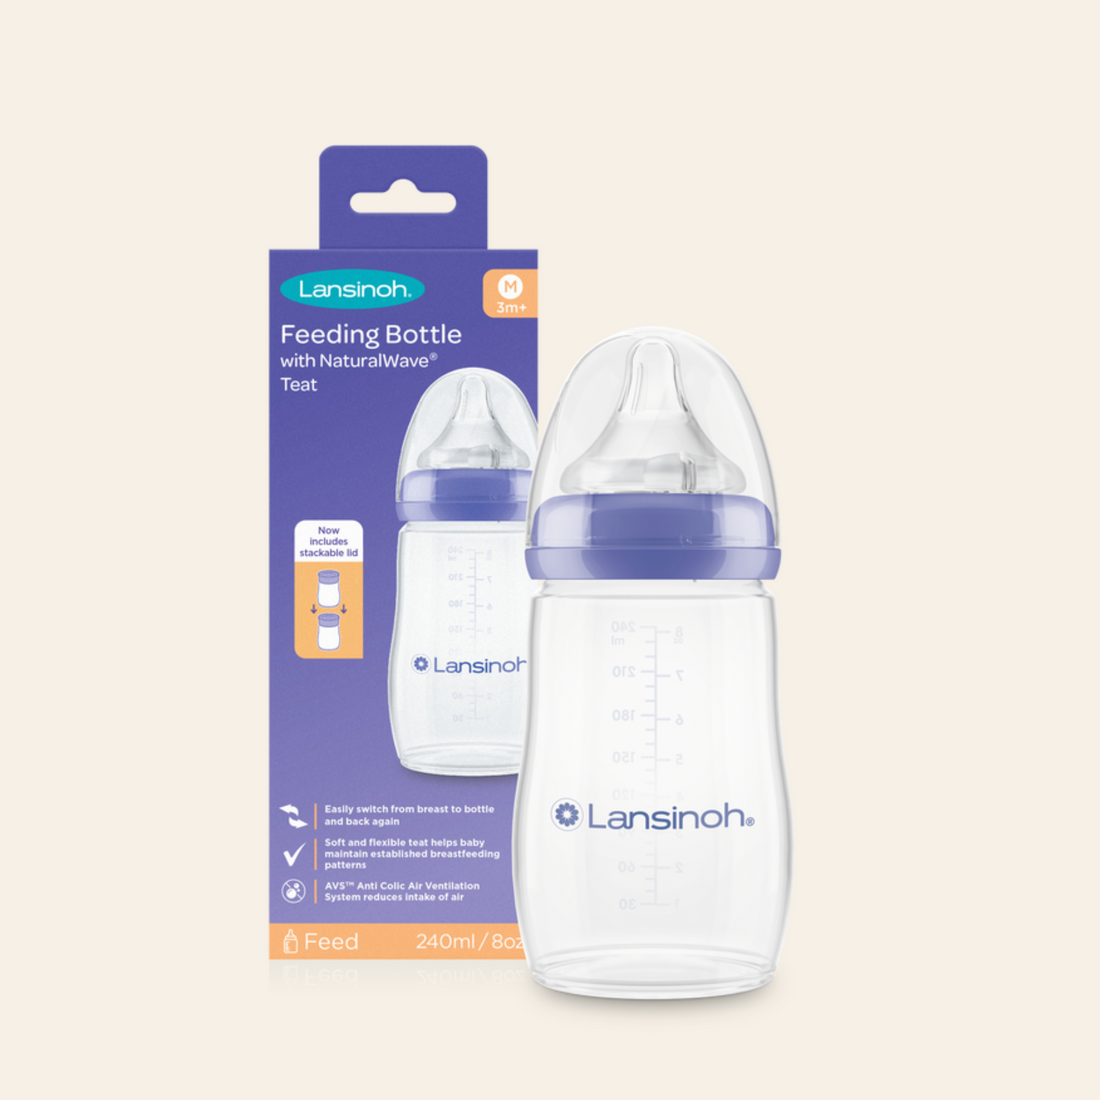 Pack of Baby Feeding Bottles 240ml with NaturalWave® Teat – Lansinoh UK